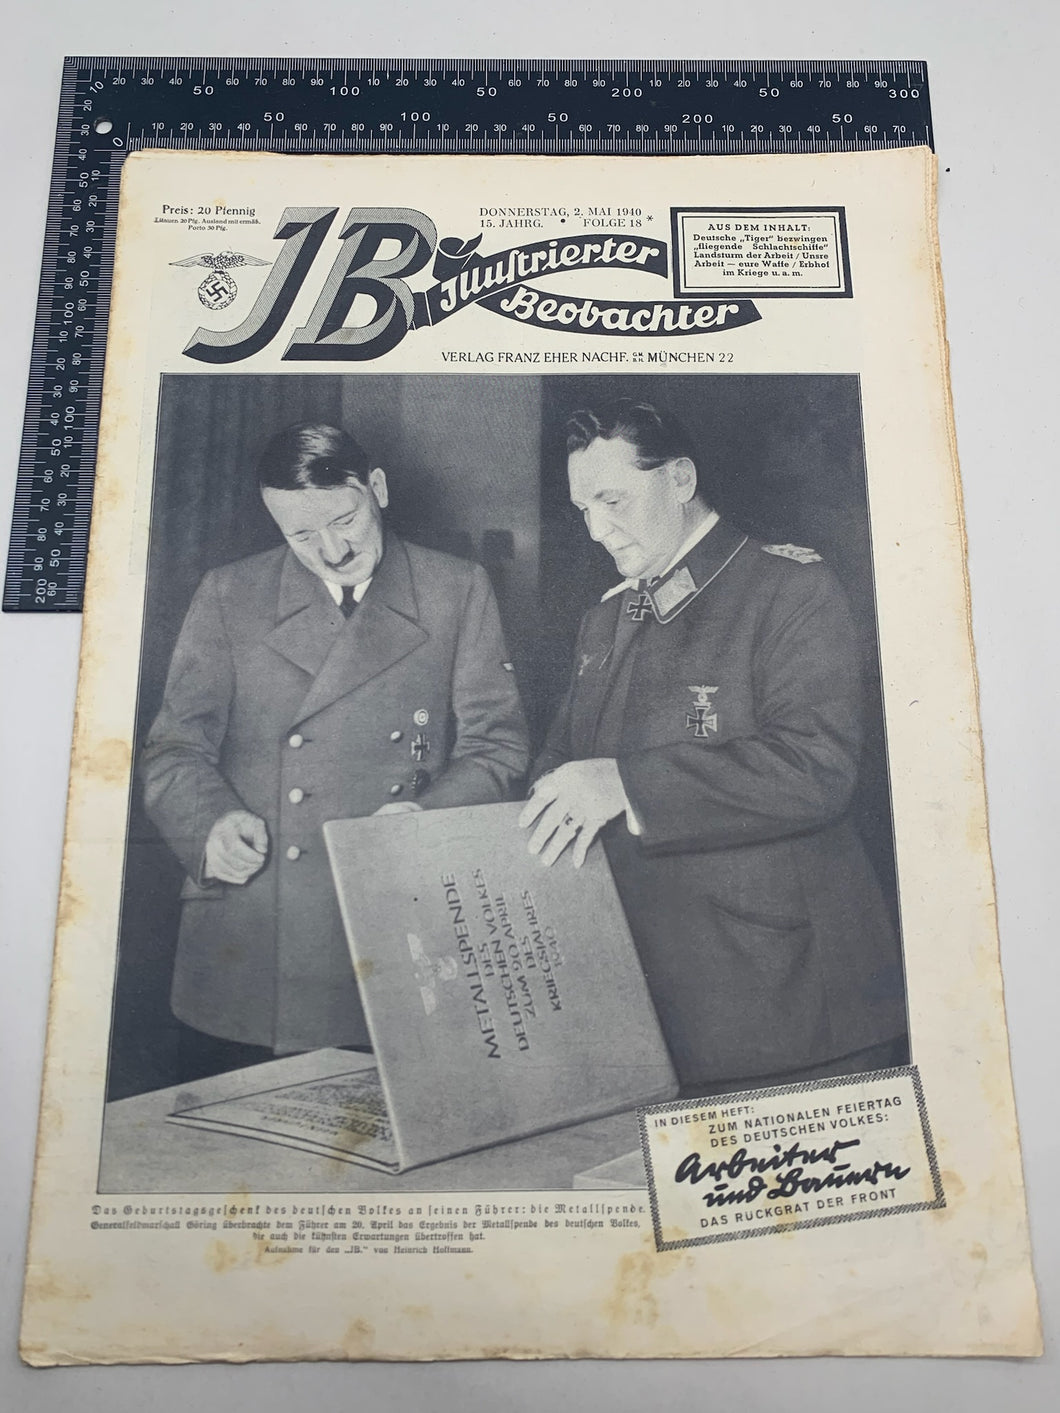 JB Juustrierter Beobachter NSDAP Magazine Original WW2 German - 2nd May 1940